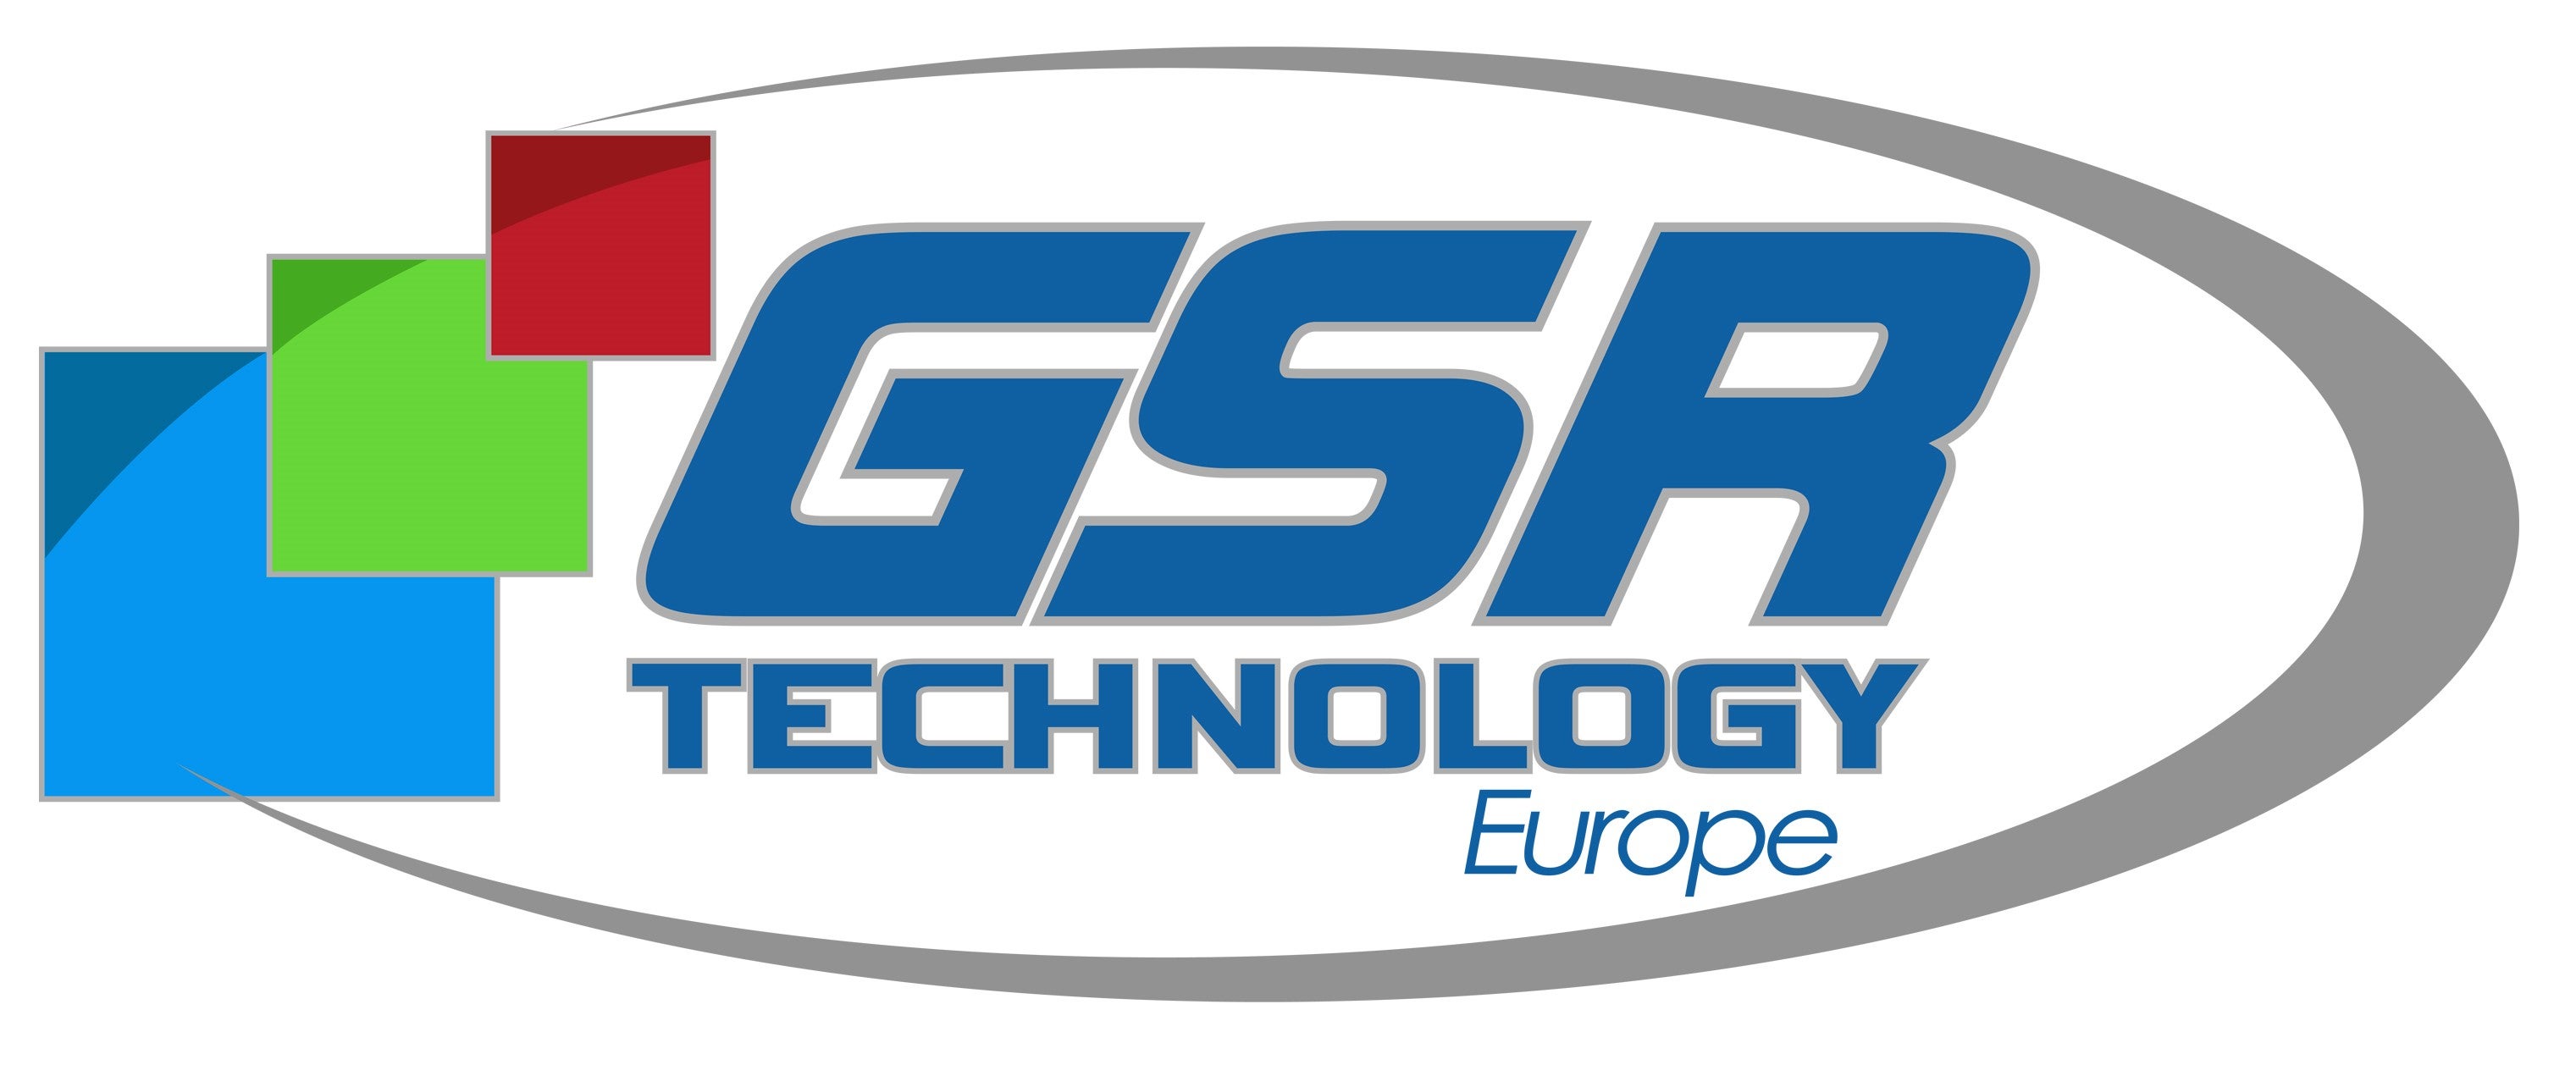 GSR Technology